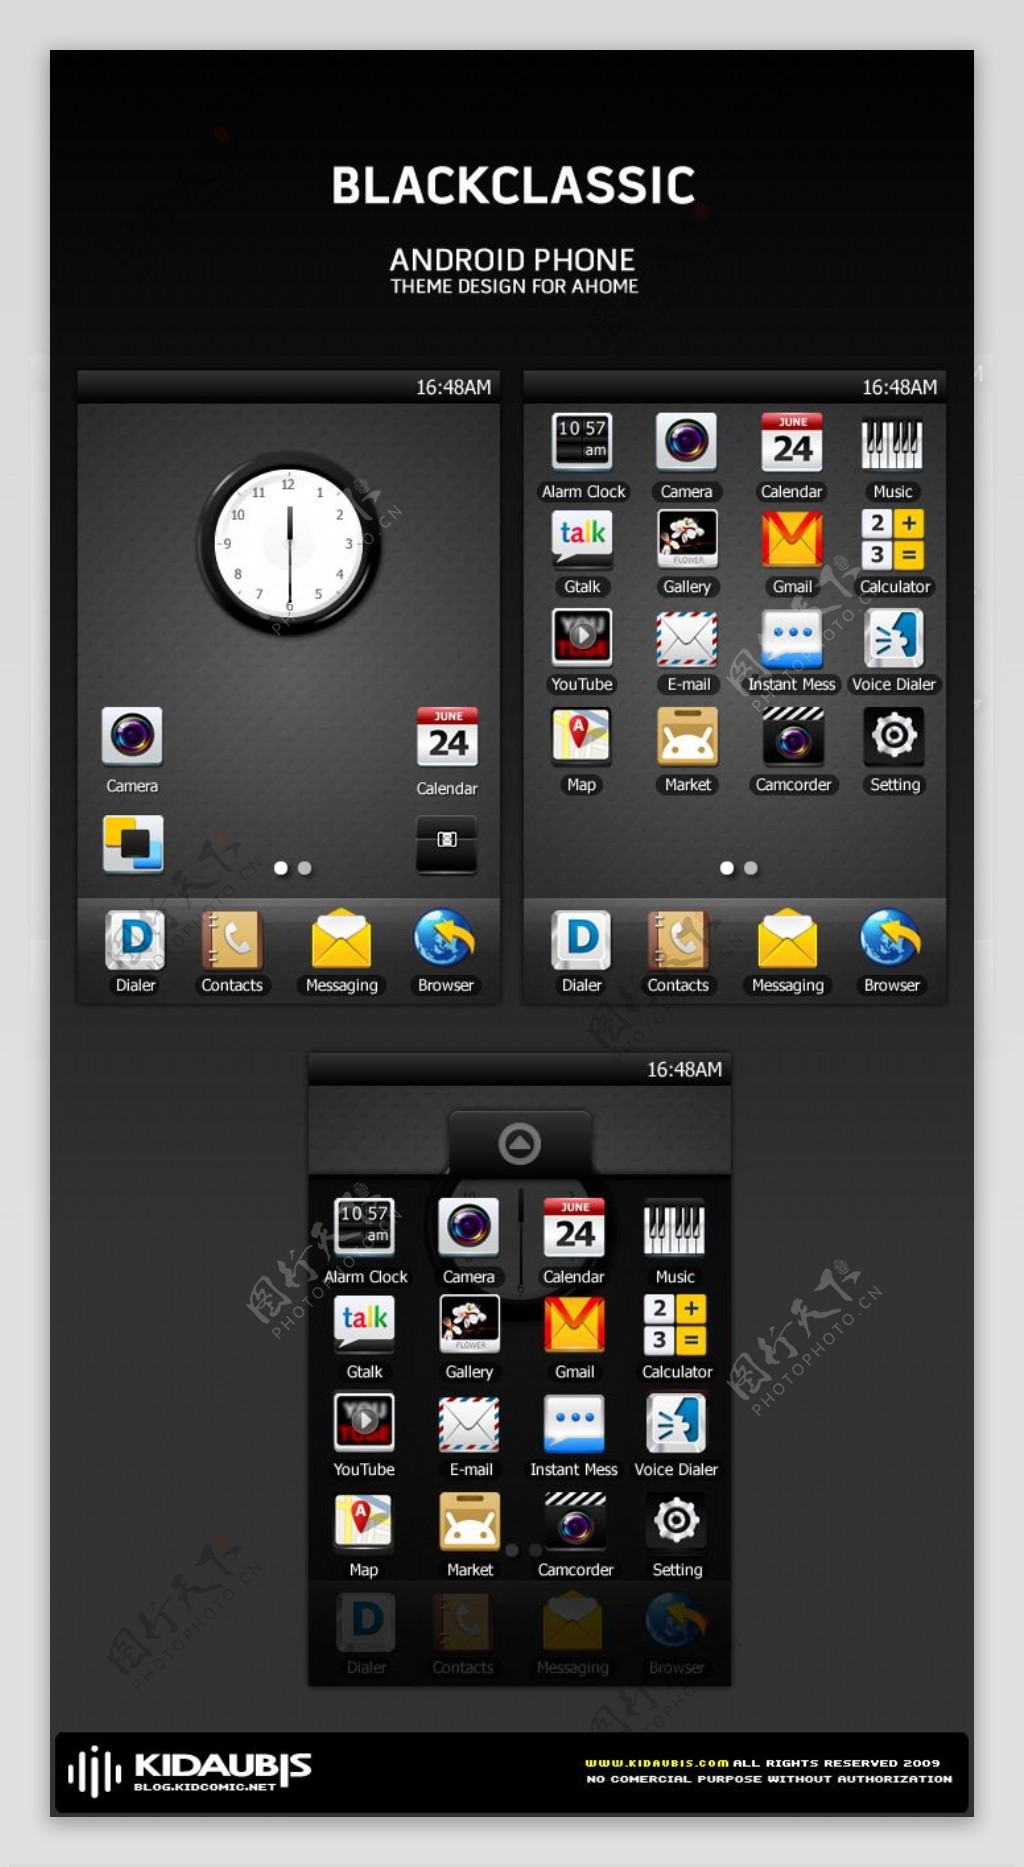 黑色经典android手机主题图标设计gtgt图标gtgt顶尖创意gtgt顶尖设计